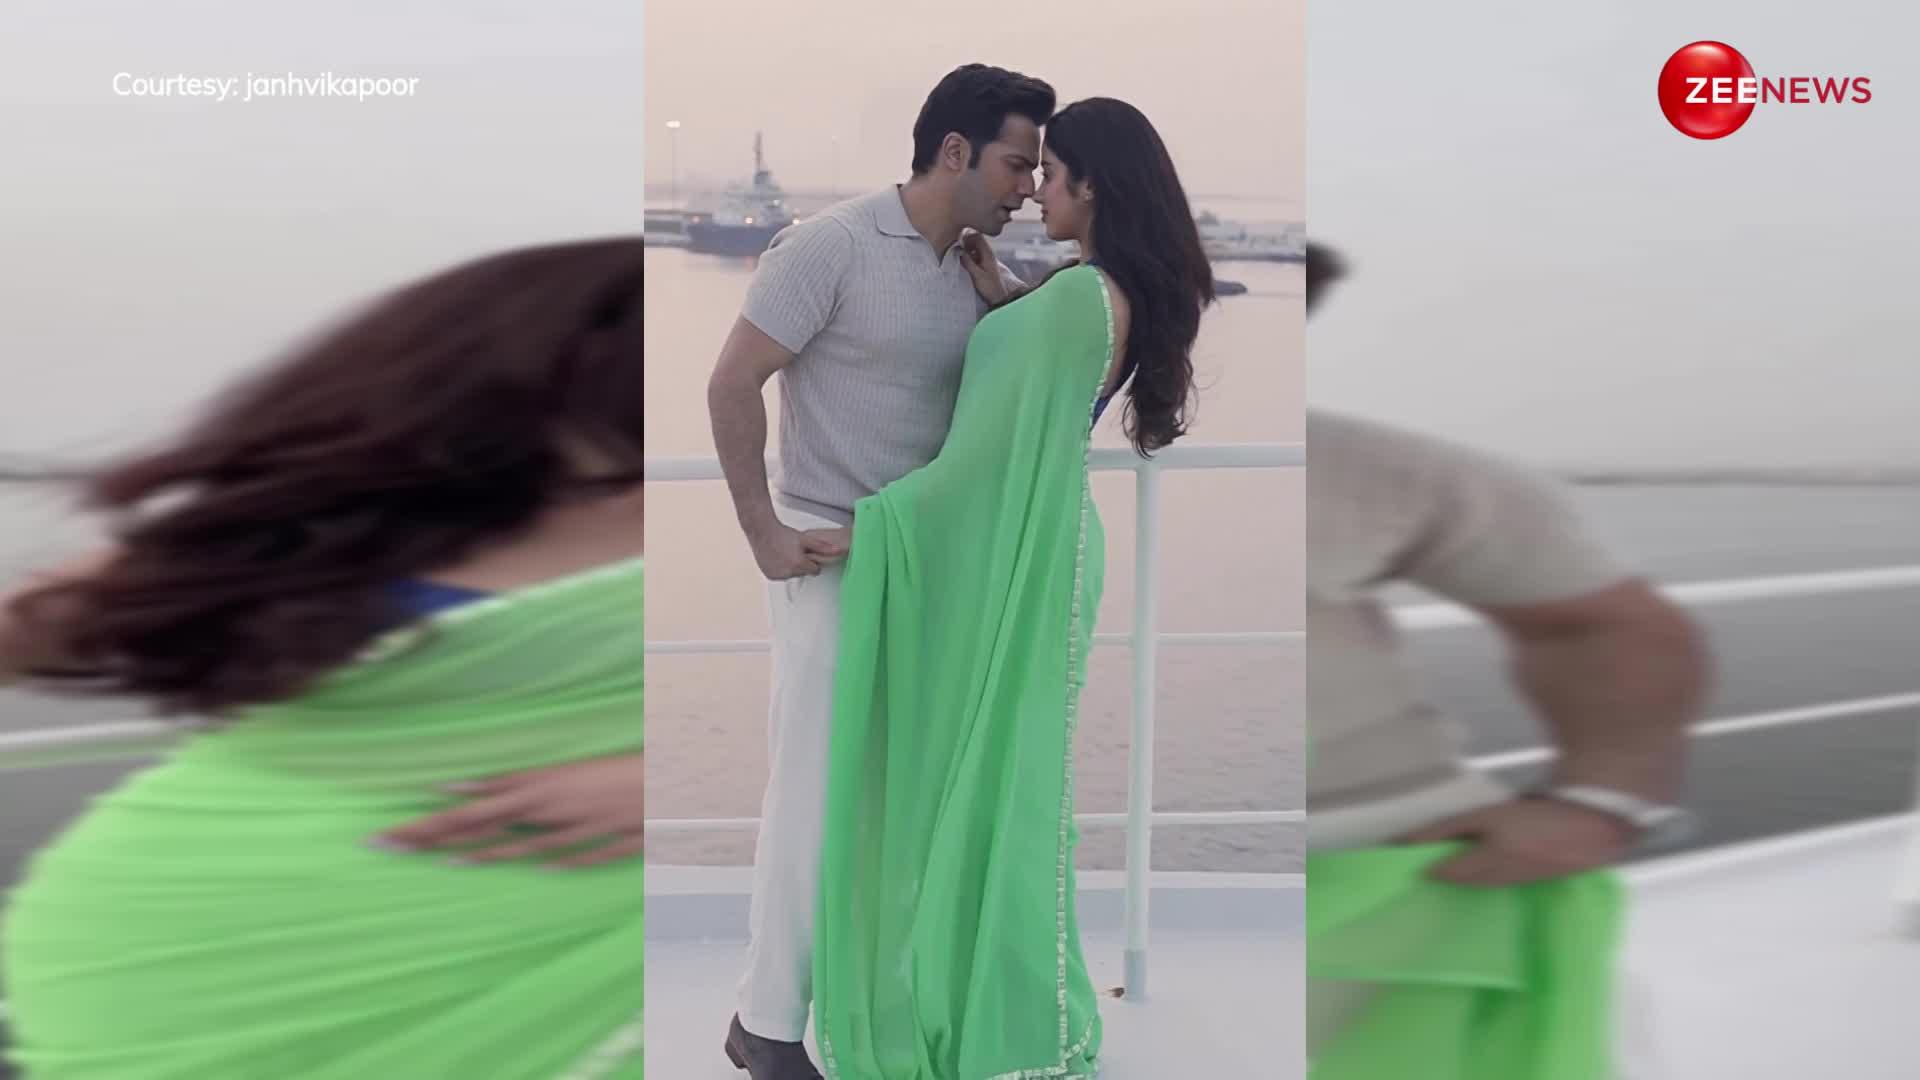 साड़ी पहन Janhvi Kapoor ने वरुण धवन के साथ रोमांटिक वीडियो किया शेयर, दोनों को साथ में देख; लोगों ने की खूब तारीफ